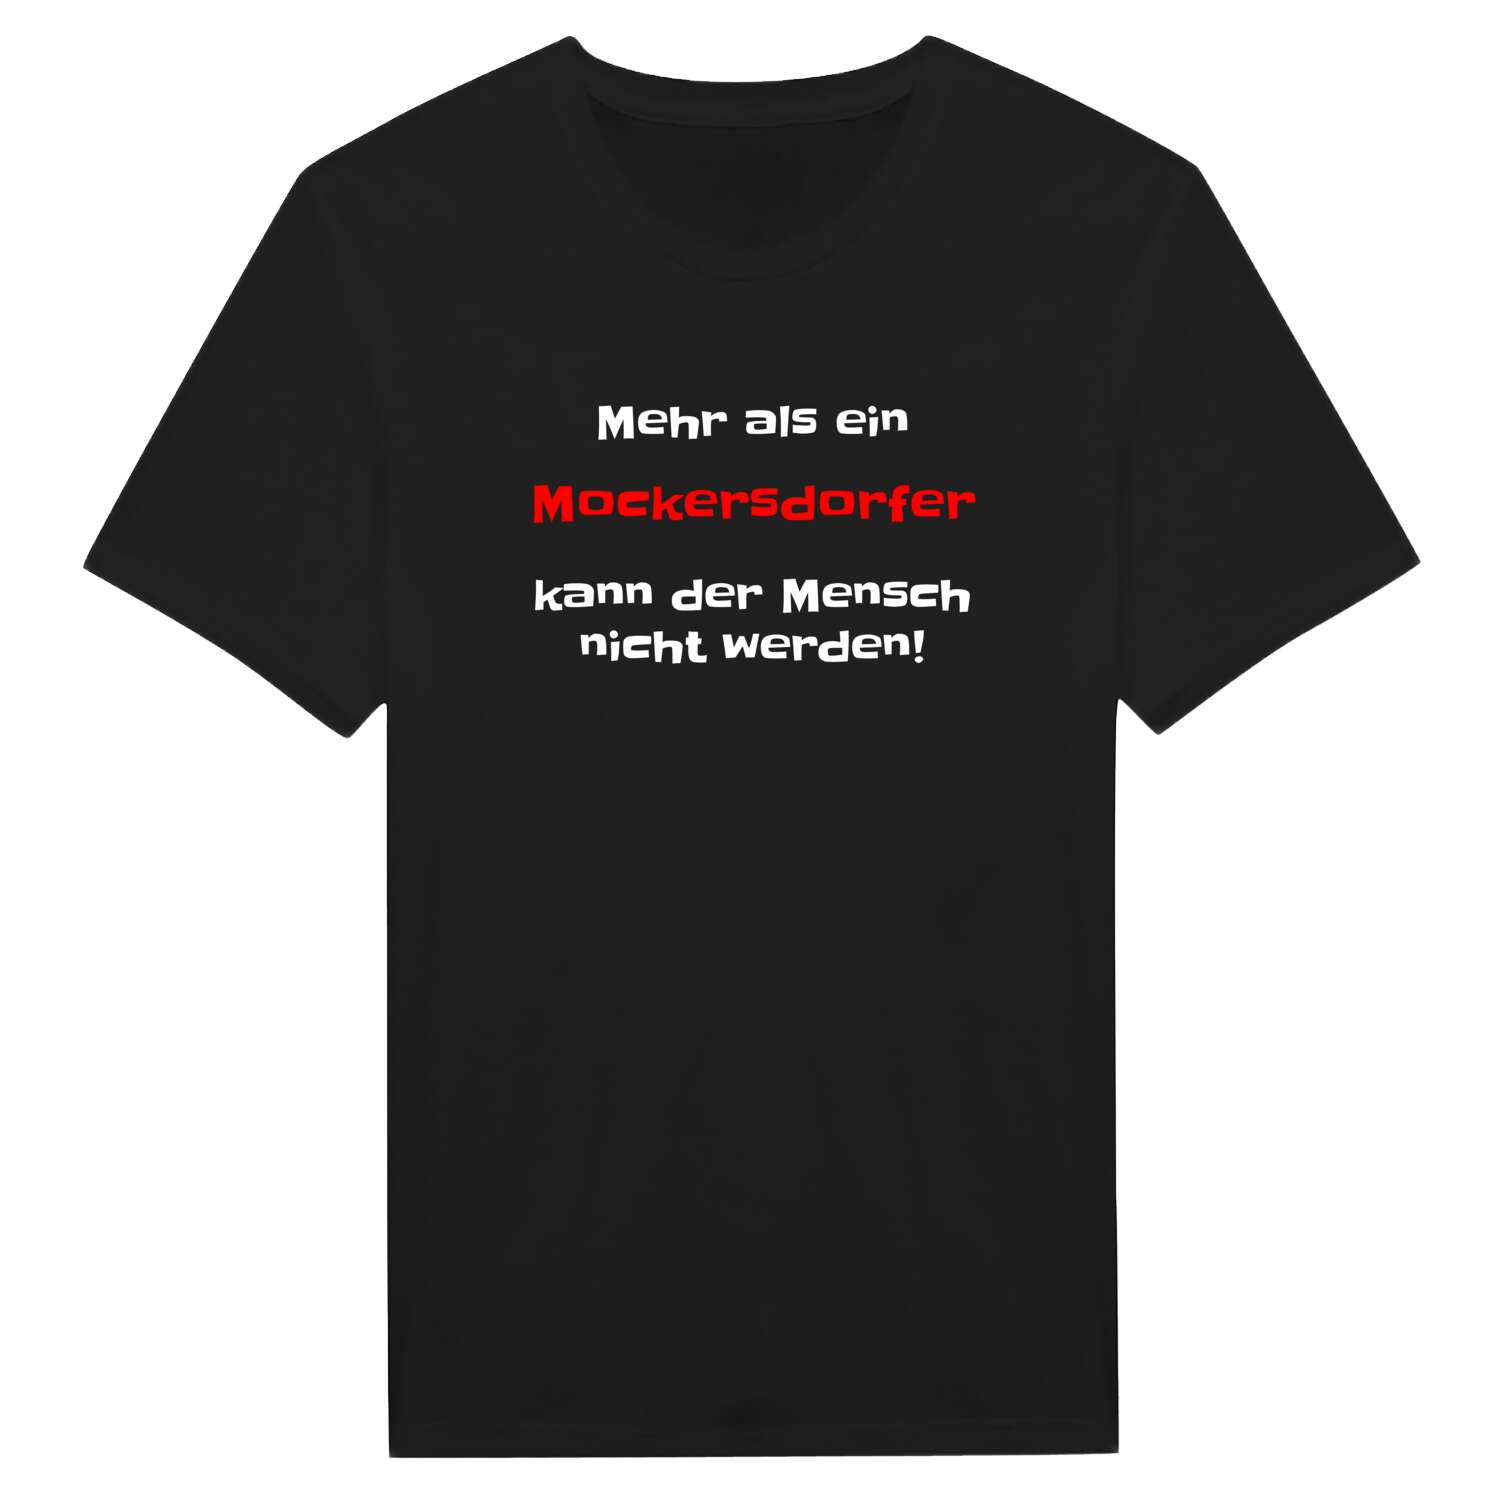 Mockersdorf T-Shirt »Mehr als ein«